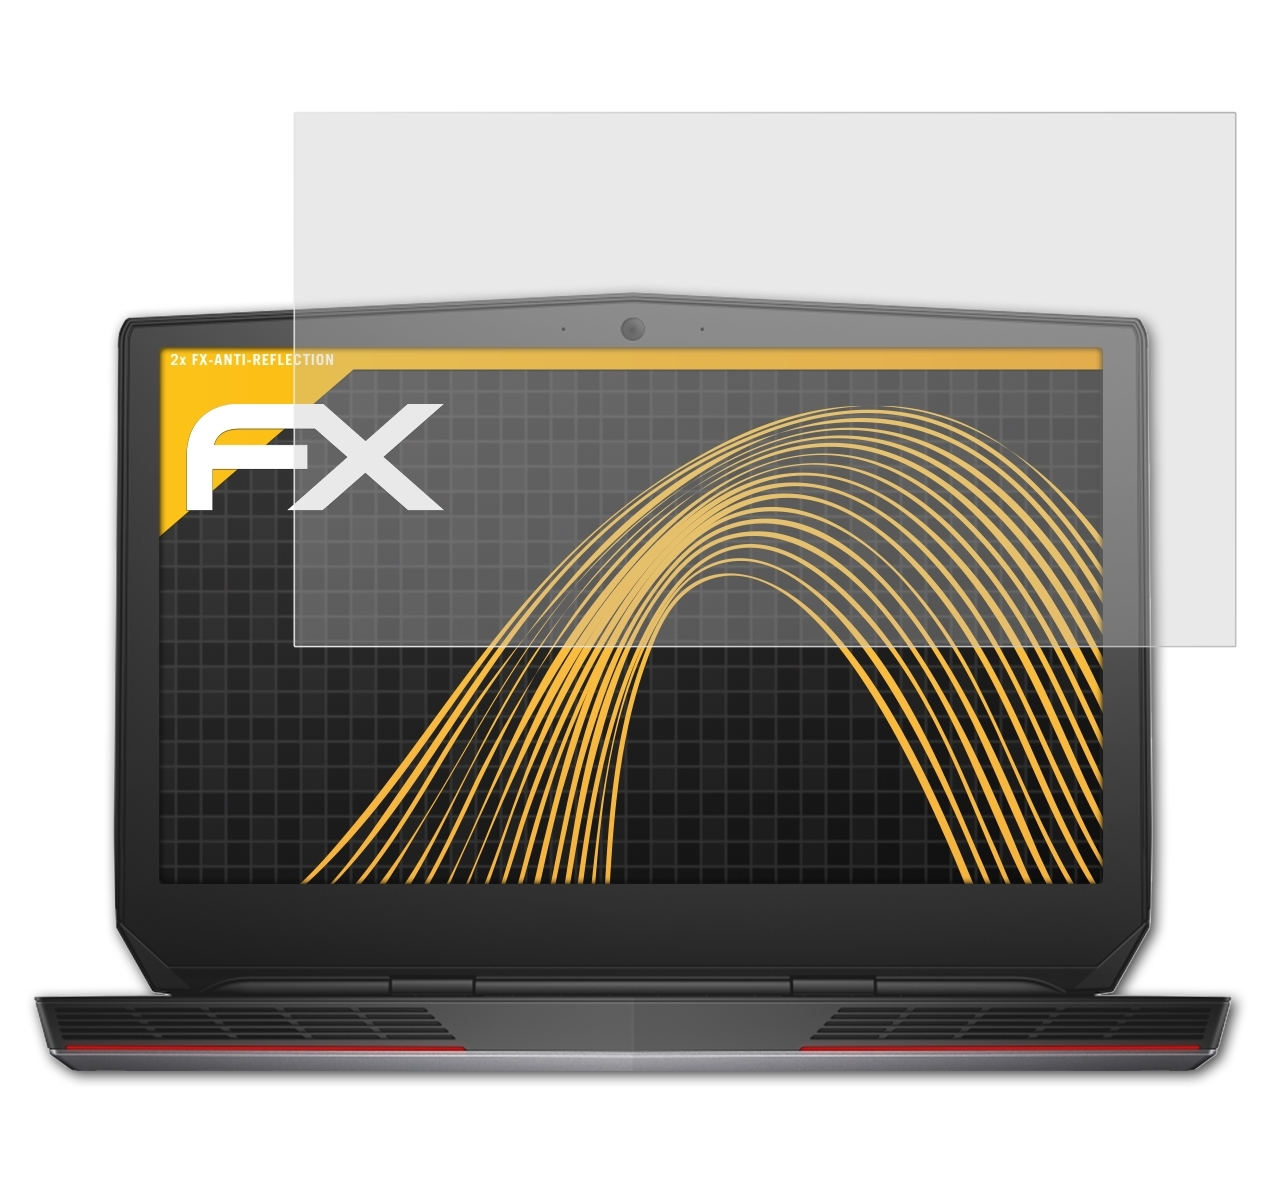 Dell ATFOLIX Displayschutz(für 17) FX-Antireflex 2x Alienware